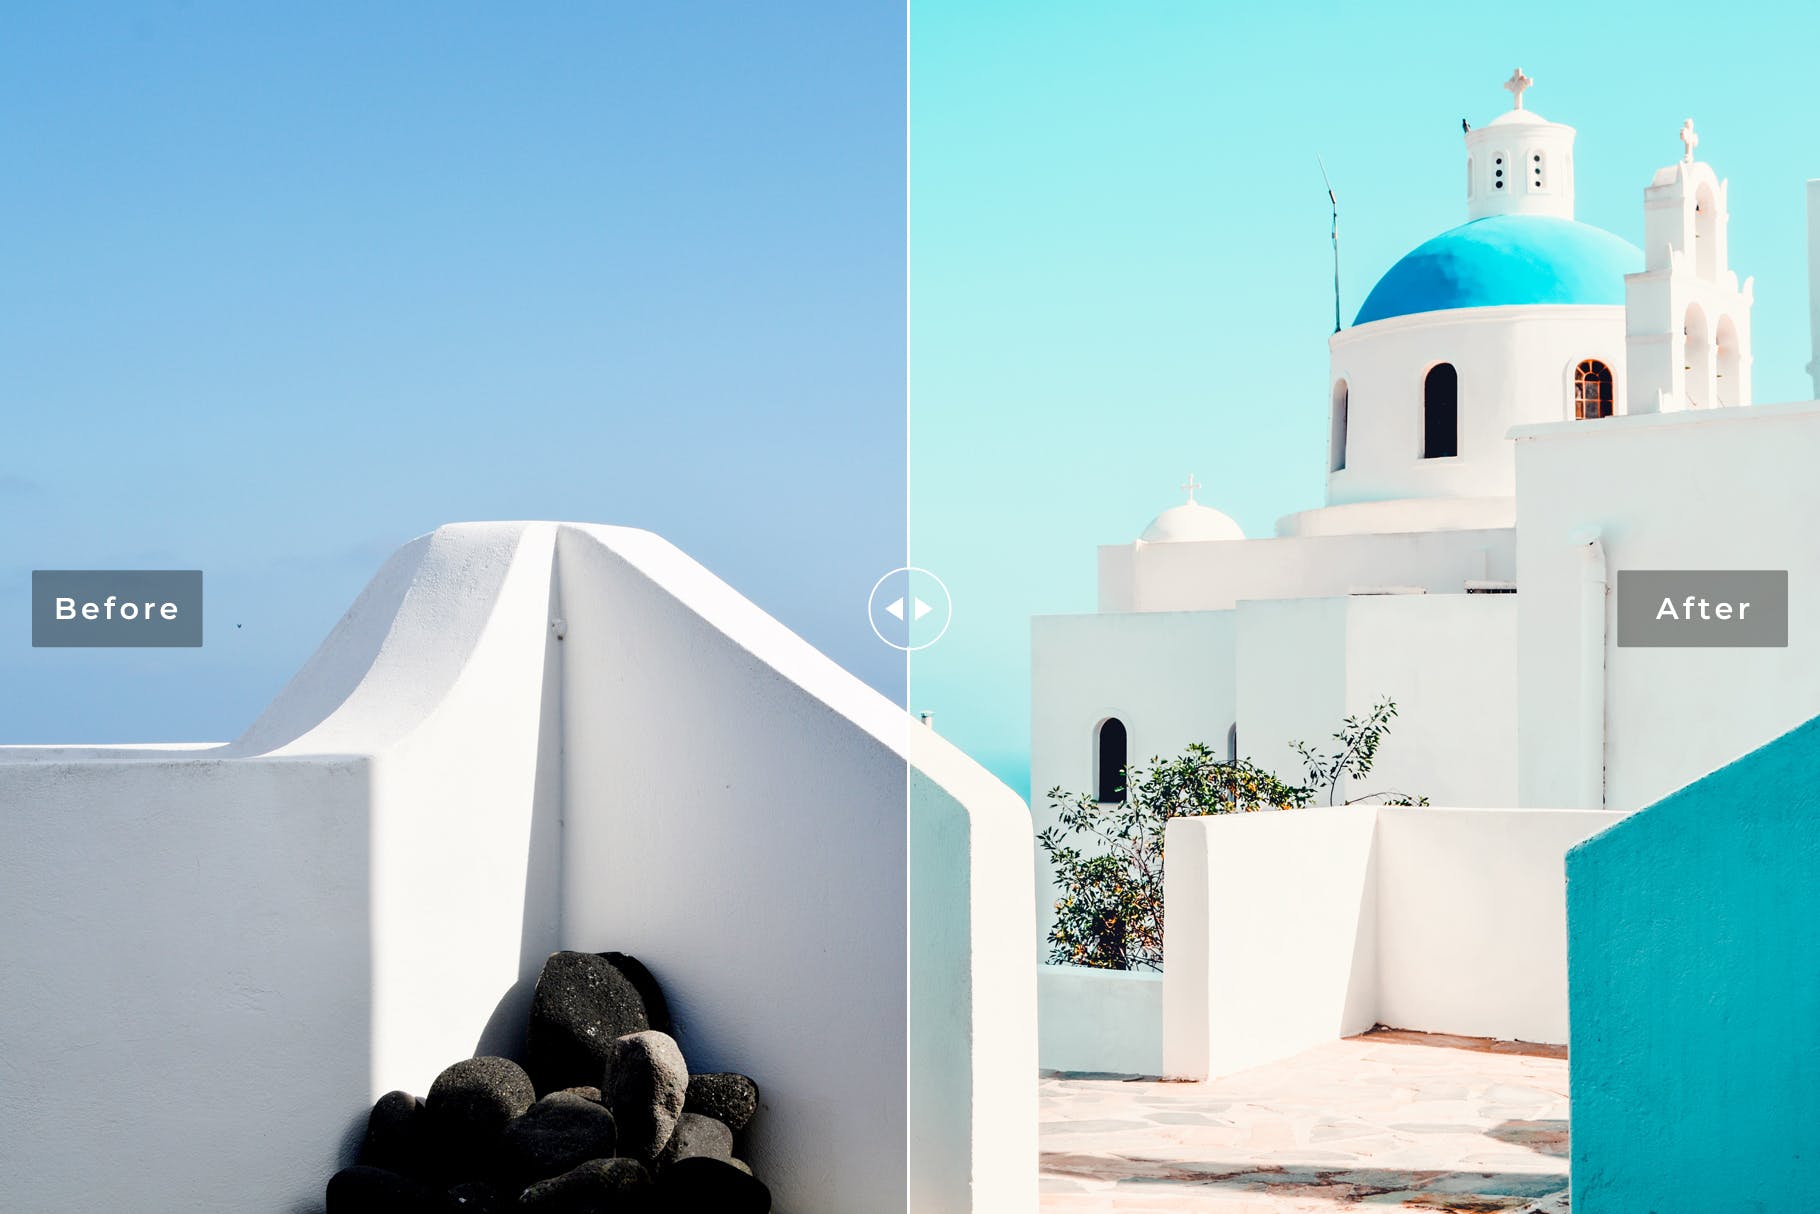 海边希腊蓝风景人像greece-mobile #339680